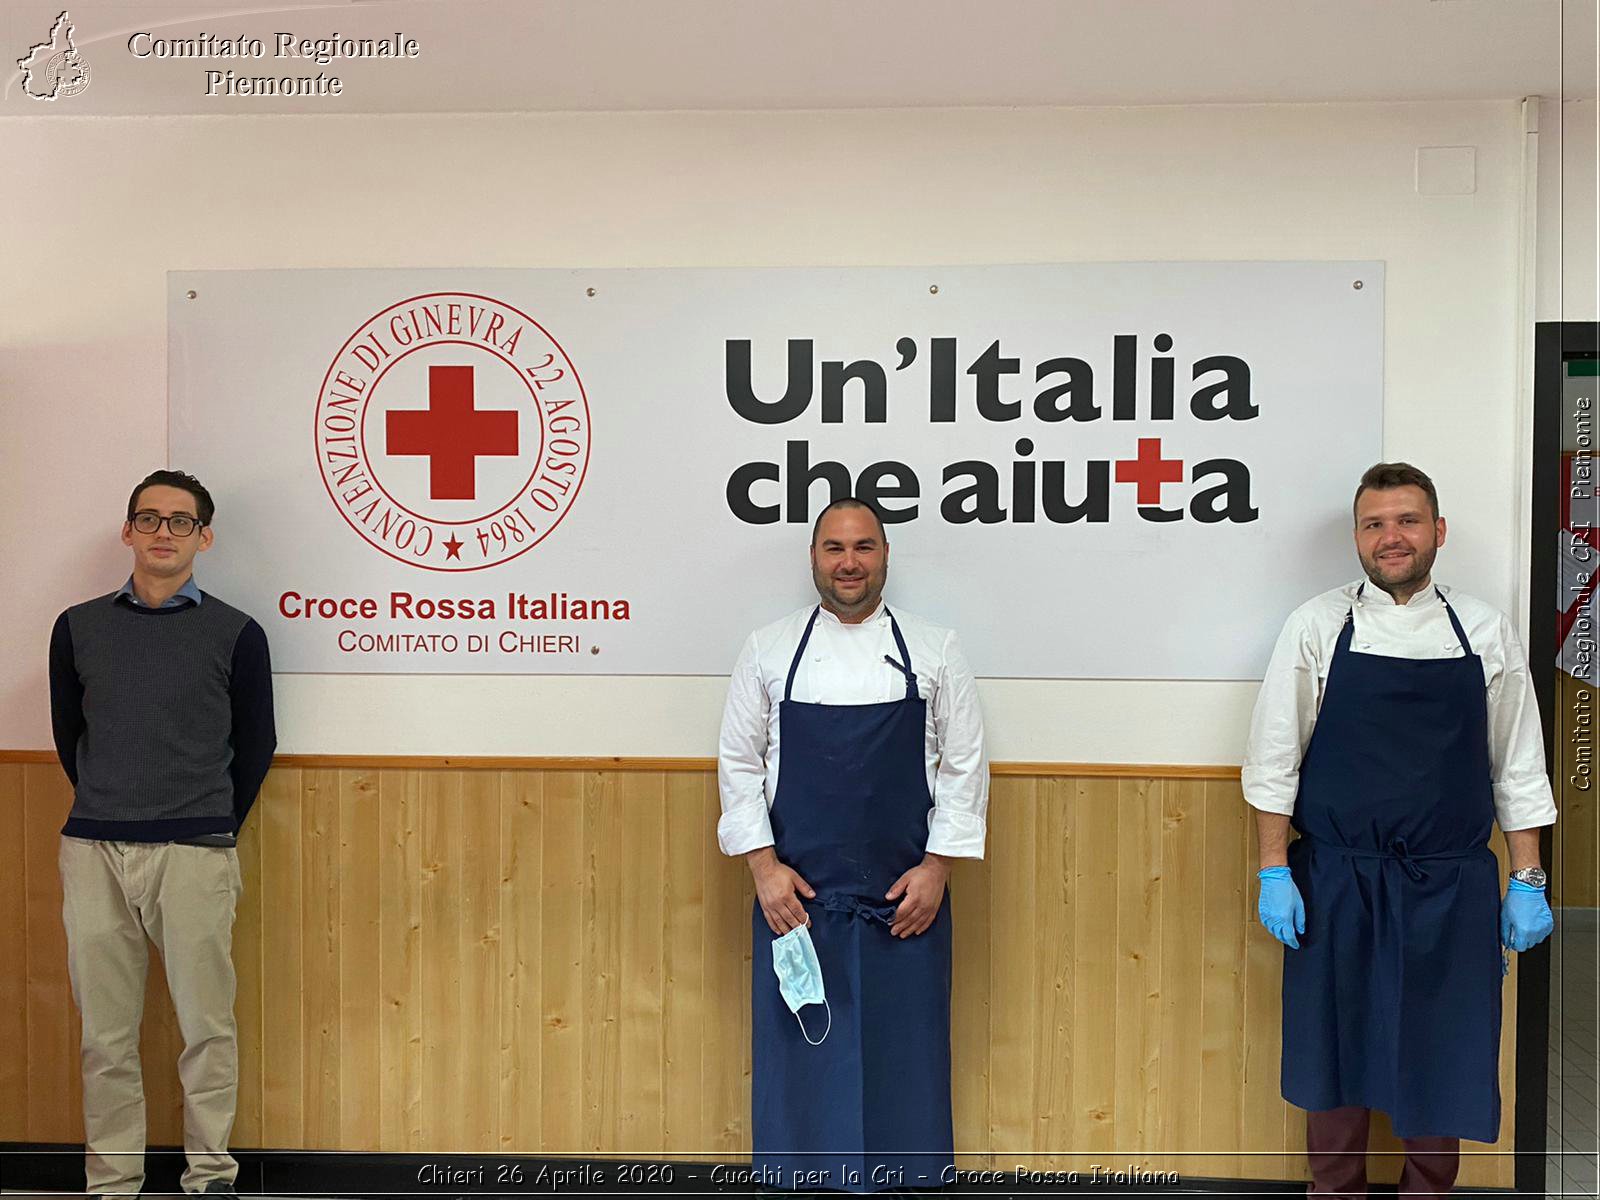 Chieri 26 Aprile 2020 - Couchi per la Cri - Croce Rossa Italiana